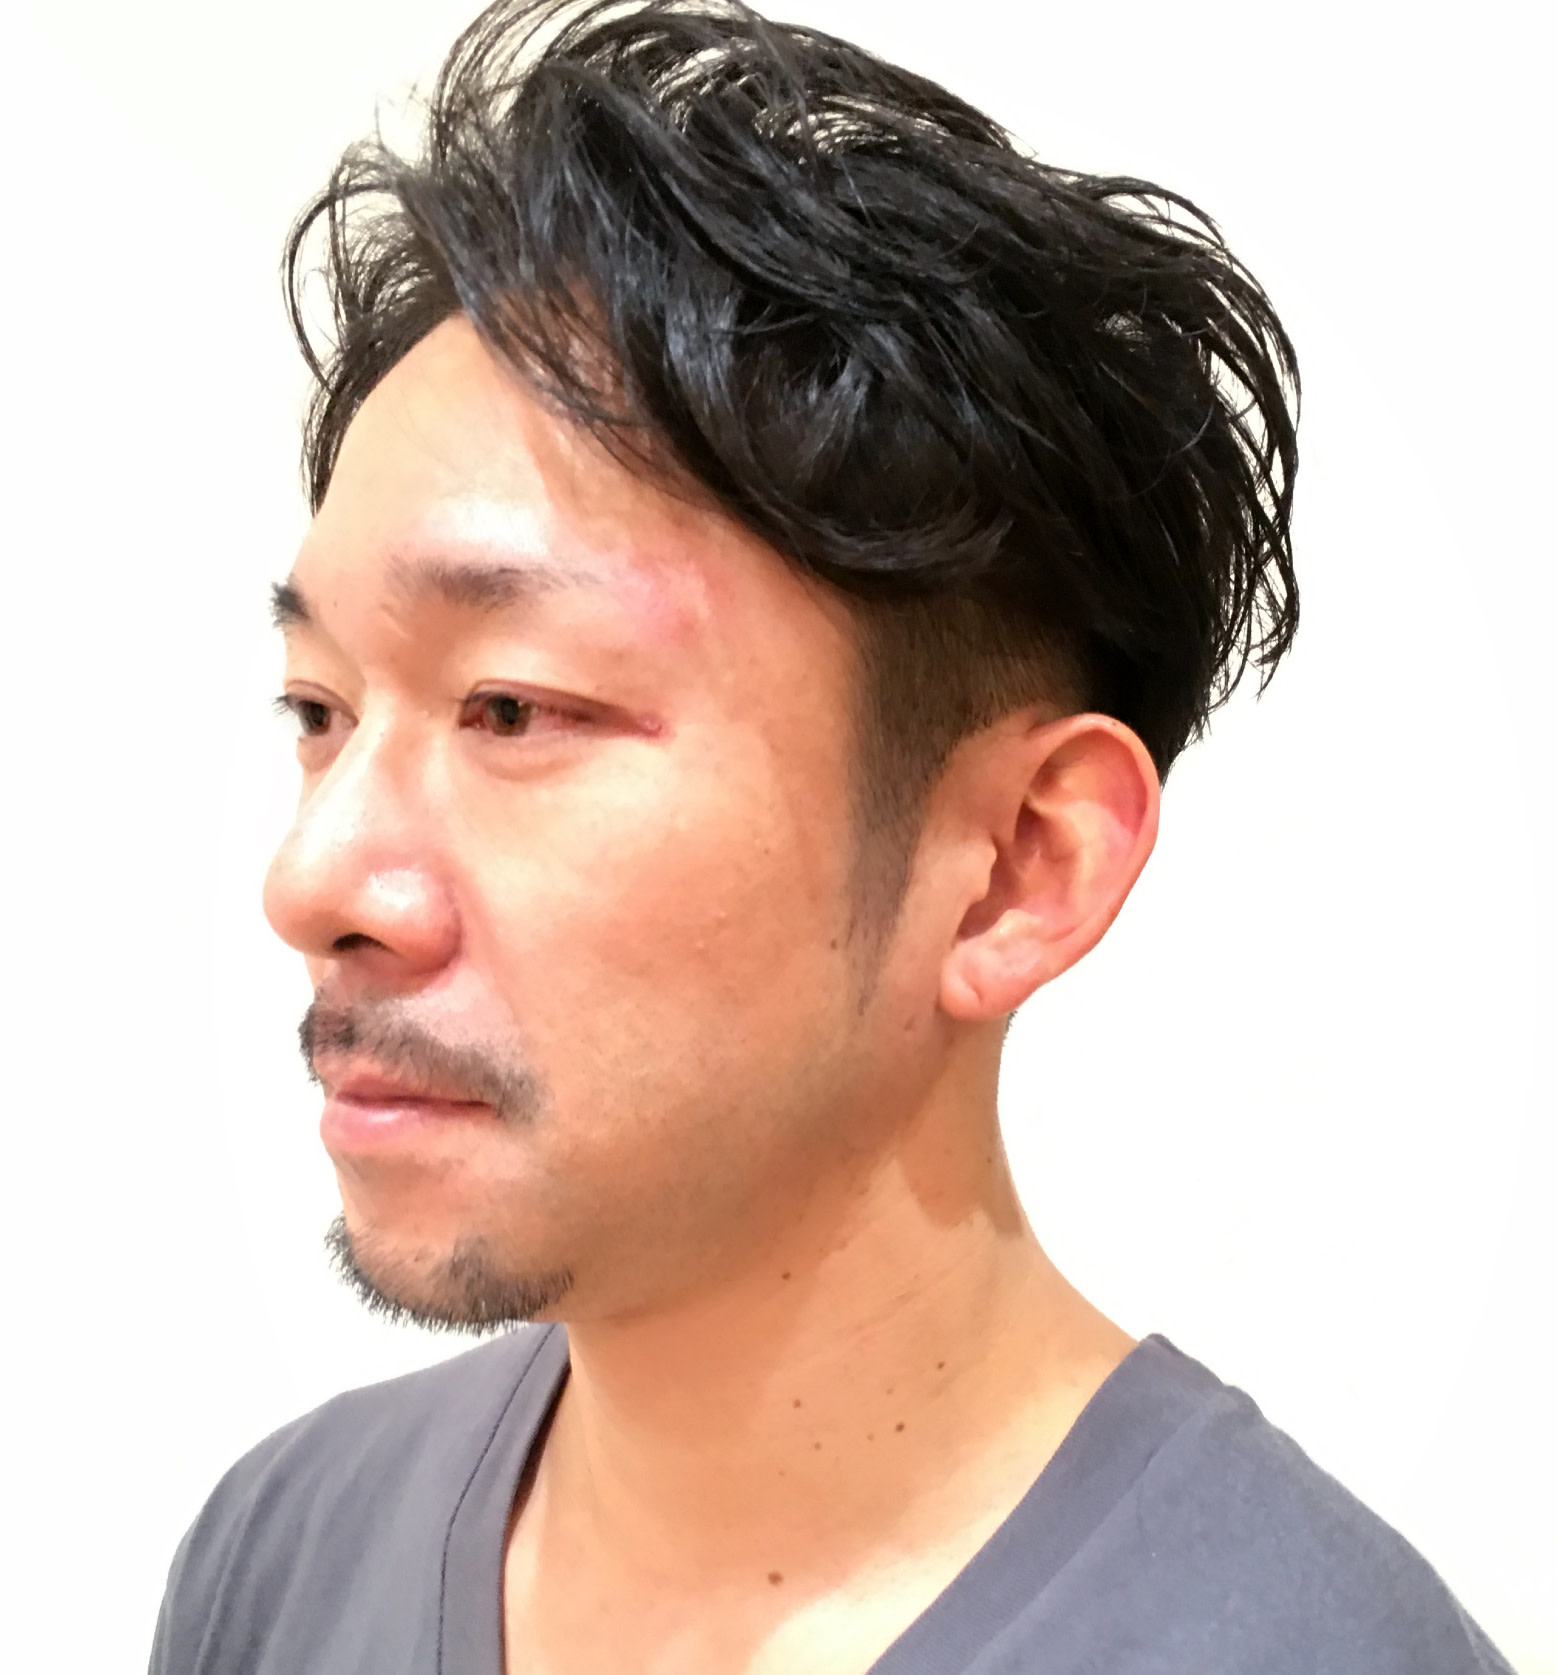 Recoru hair design【ルコルヘアーデザイン】のスタイル紹介。ネオツーブロック